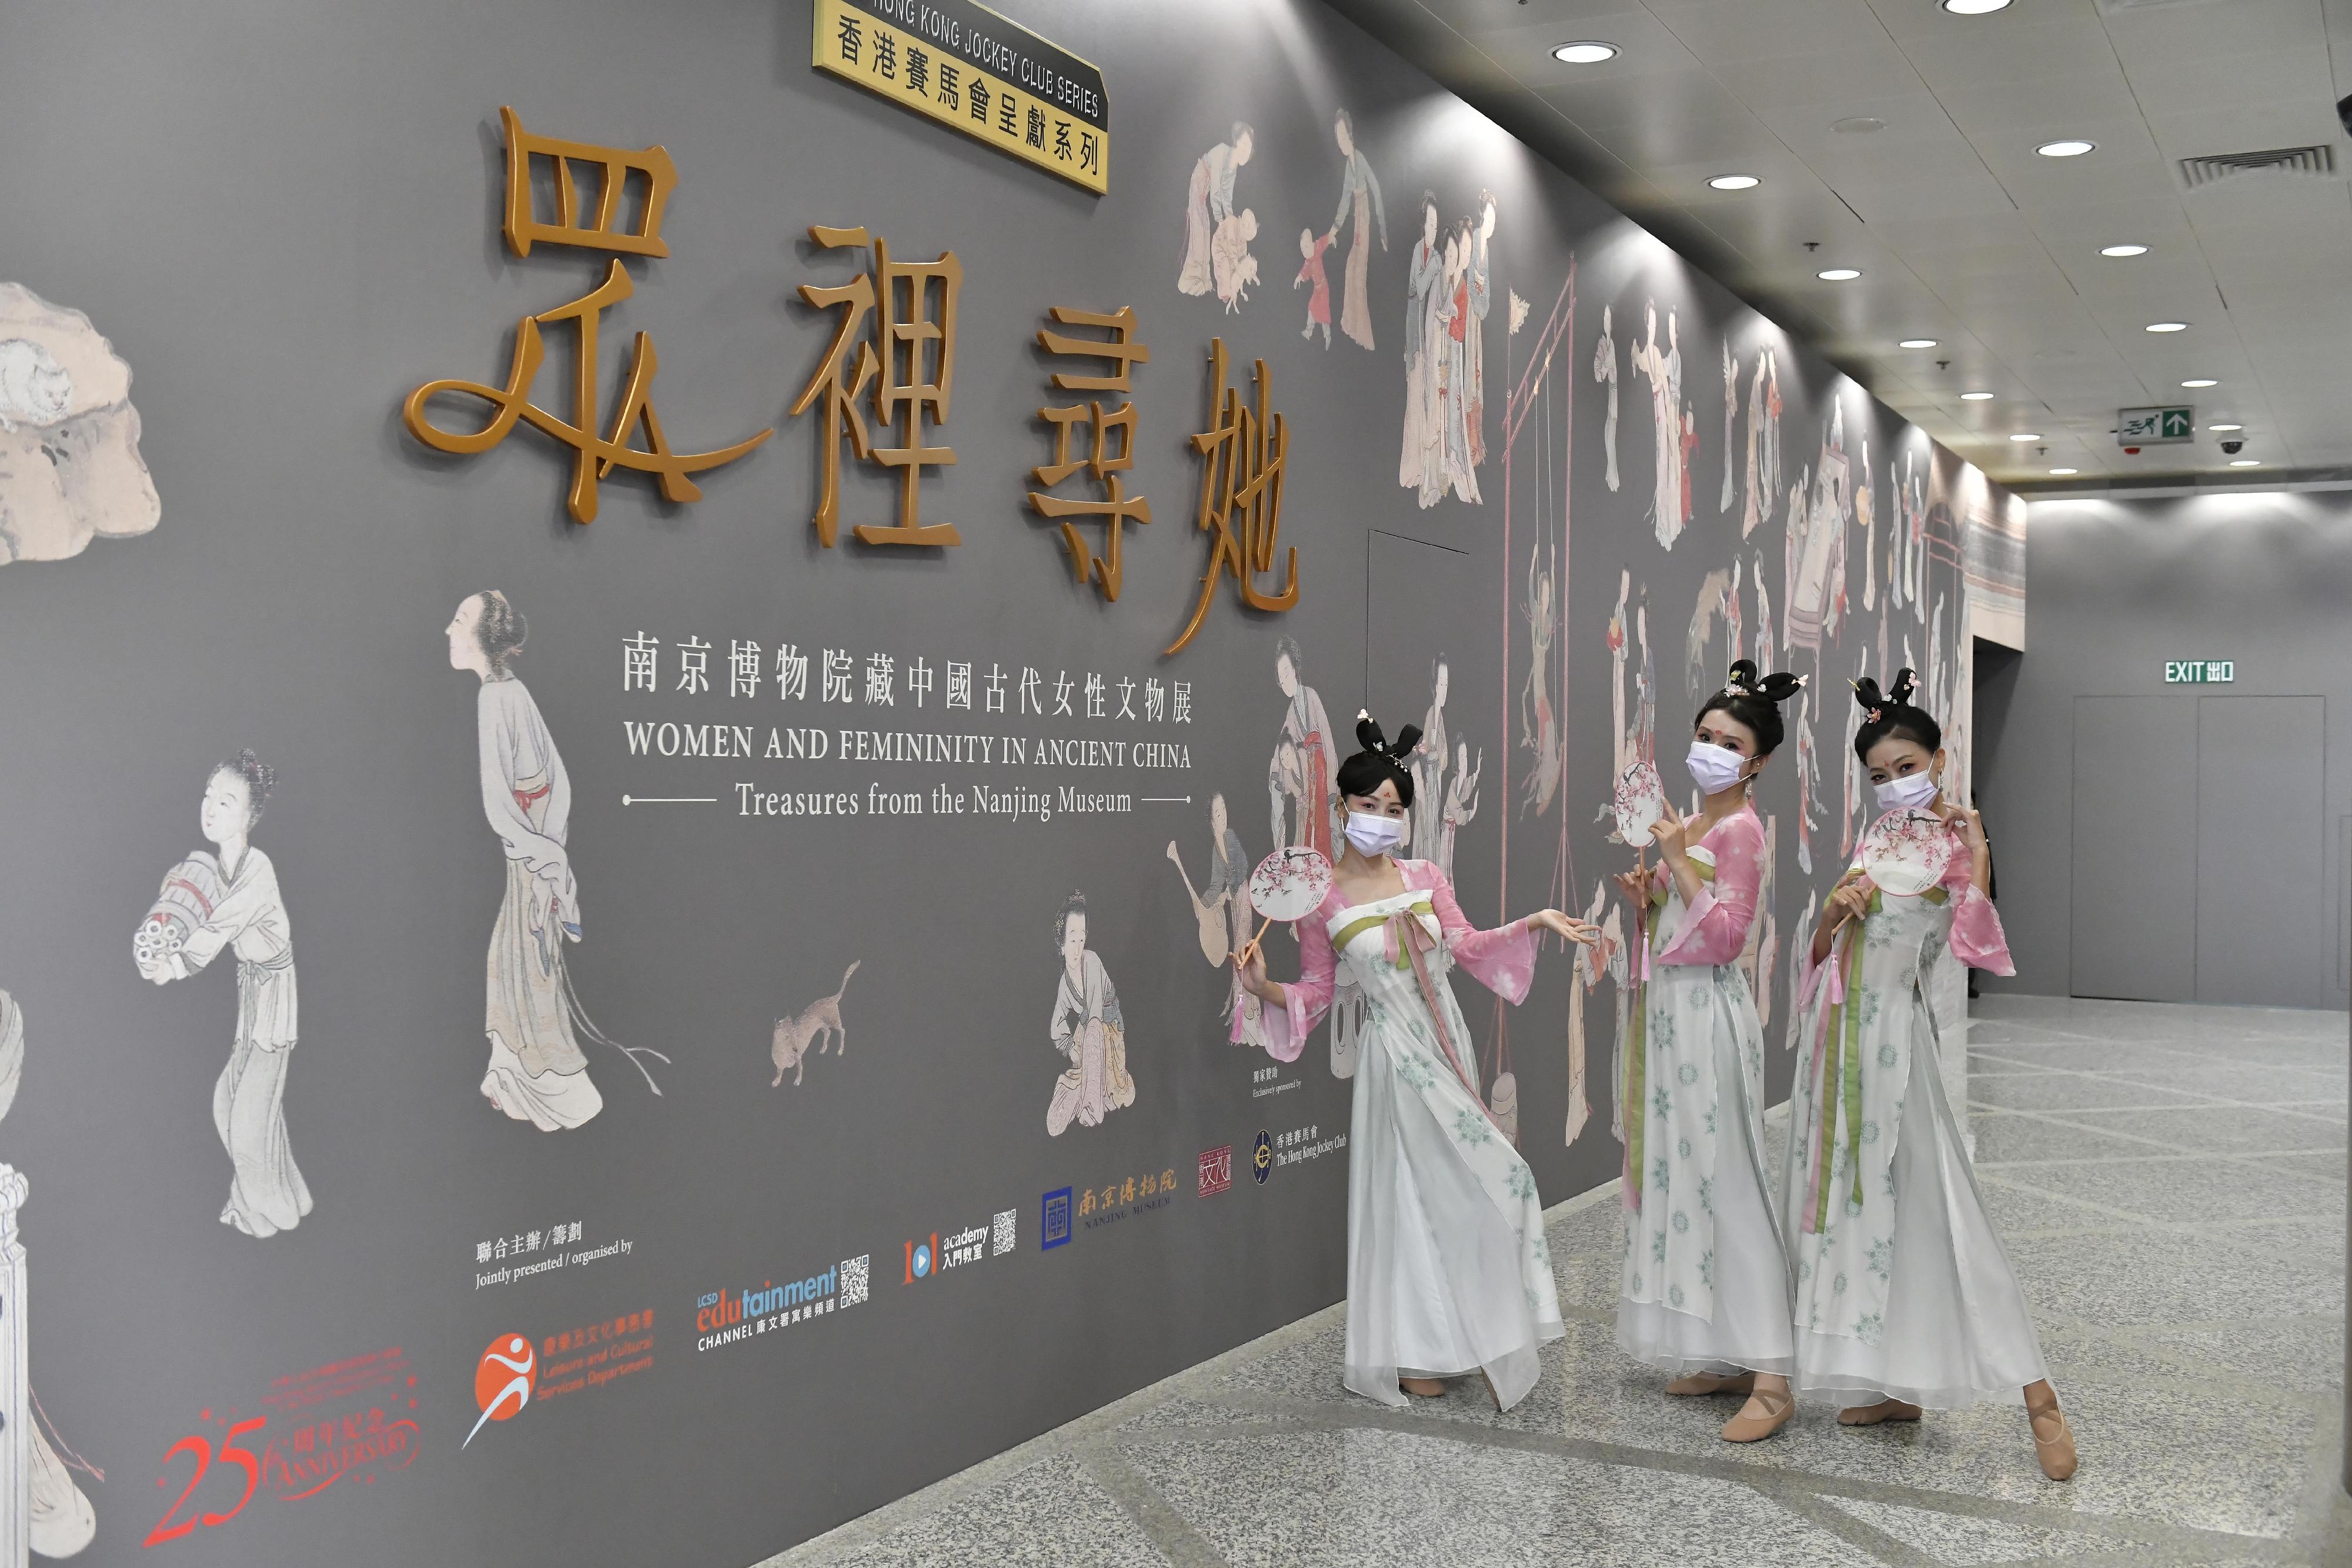 現正於香港文化博物館舉行的「香港賽馬會呈獻系列：眾裡尋她——南京博物院藏中國古代女性文物展」二月二十七日 （星期一）結束，市民請把握機會參觀這個不容錯過的展覽。